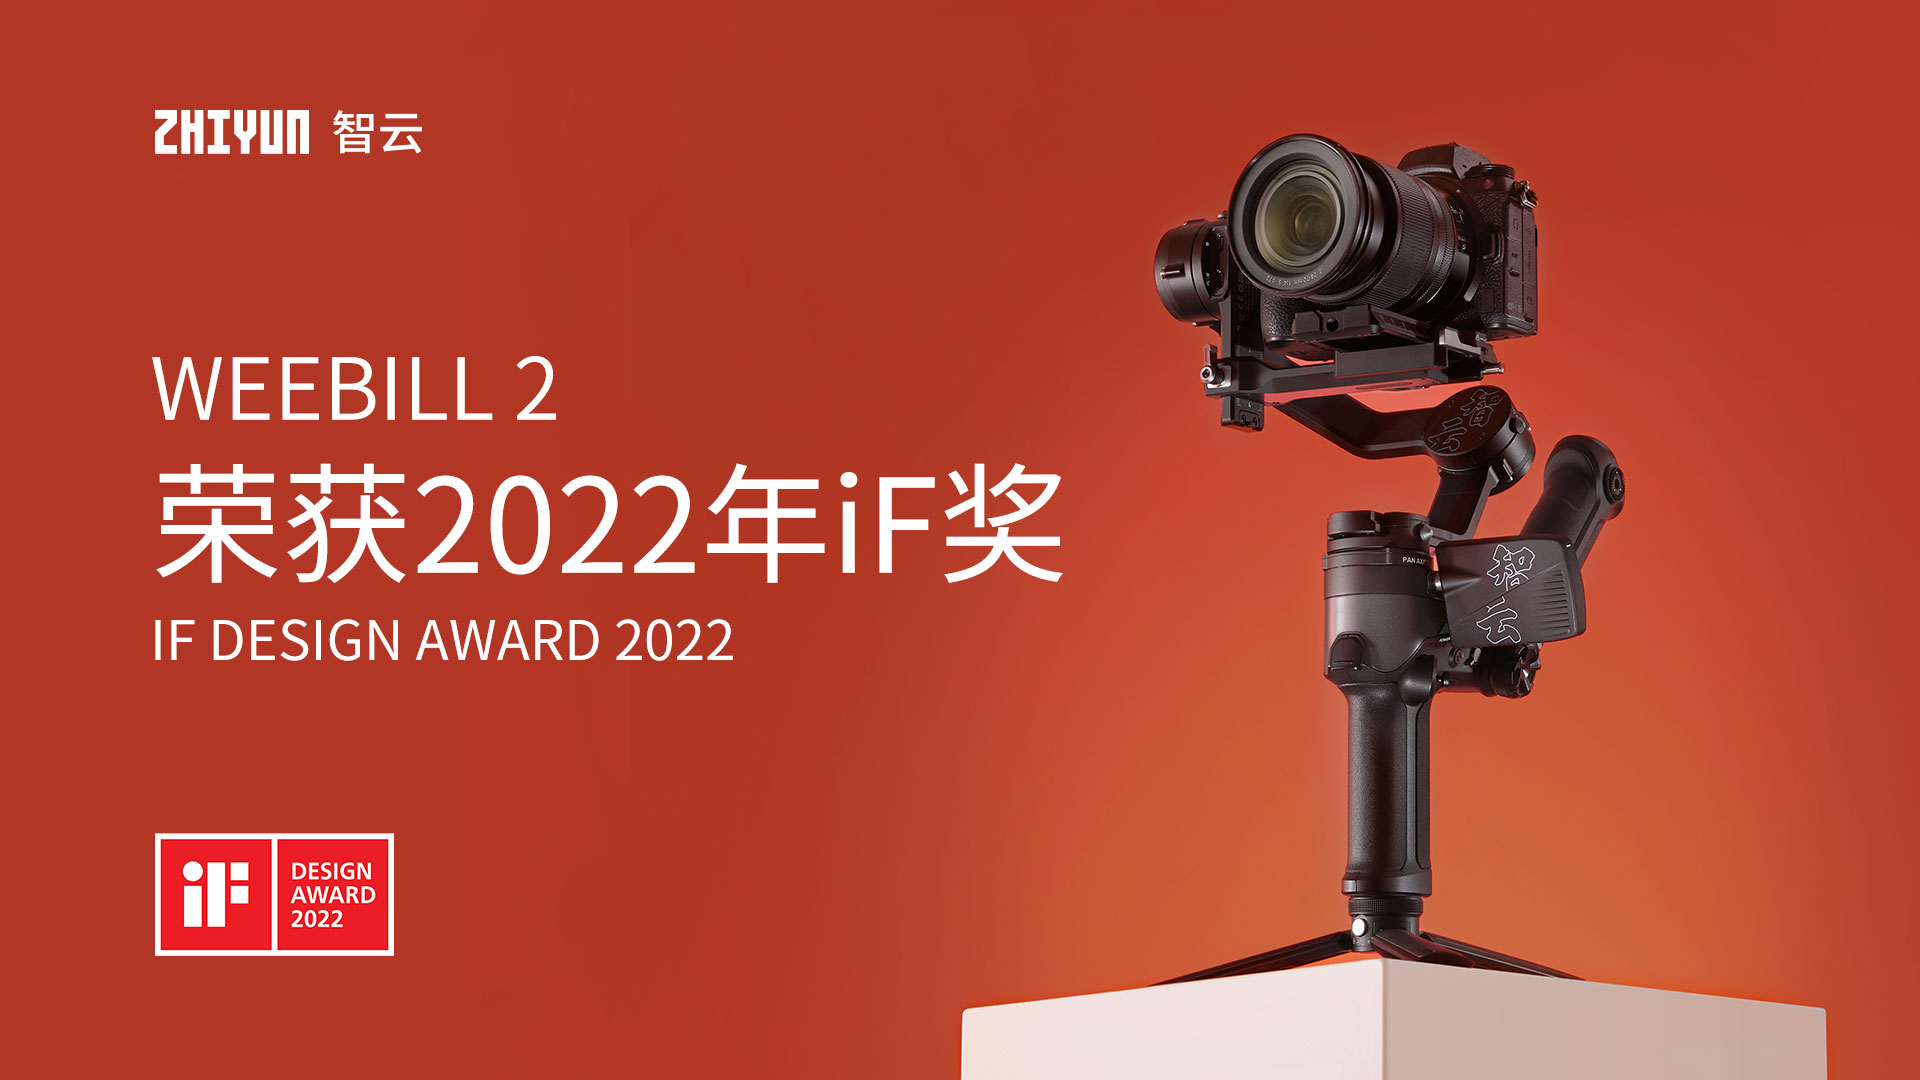 智云WEEBILL 2相机云台荣获2022年德国iF奖